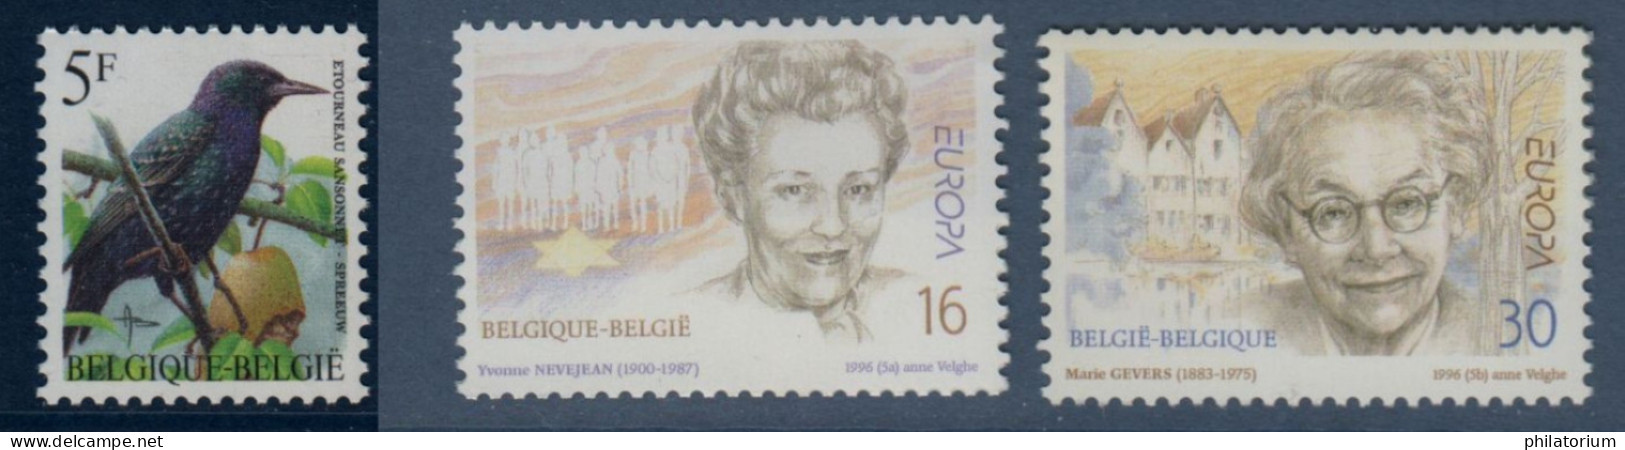 Belgique België, **, Yv 2636, 2637, 2638, Mi 2690, 2688, 2689, SG 3307, 3301, 3302, - Unused Stamps